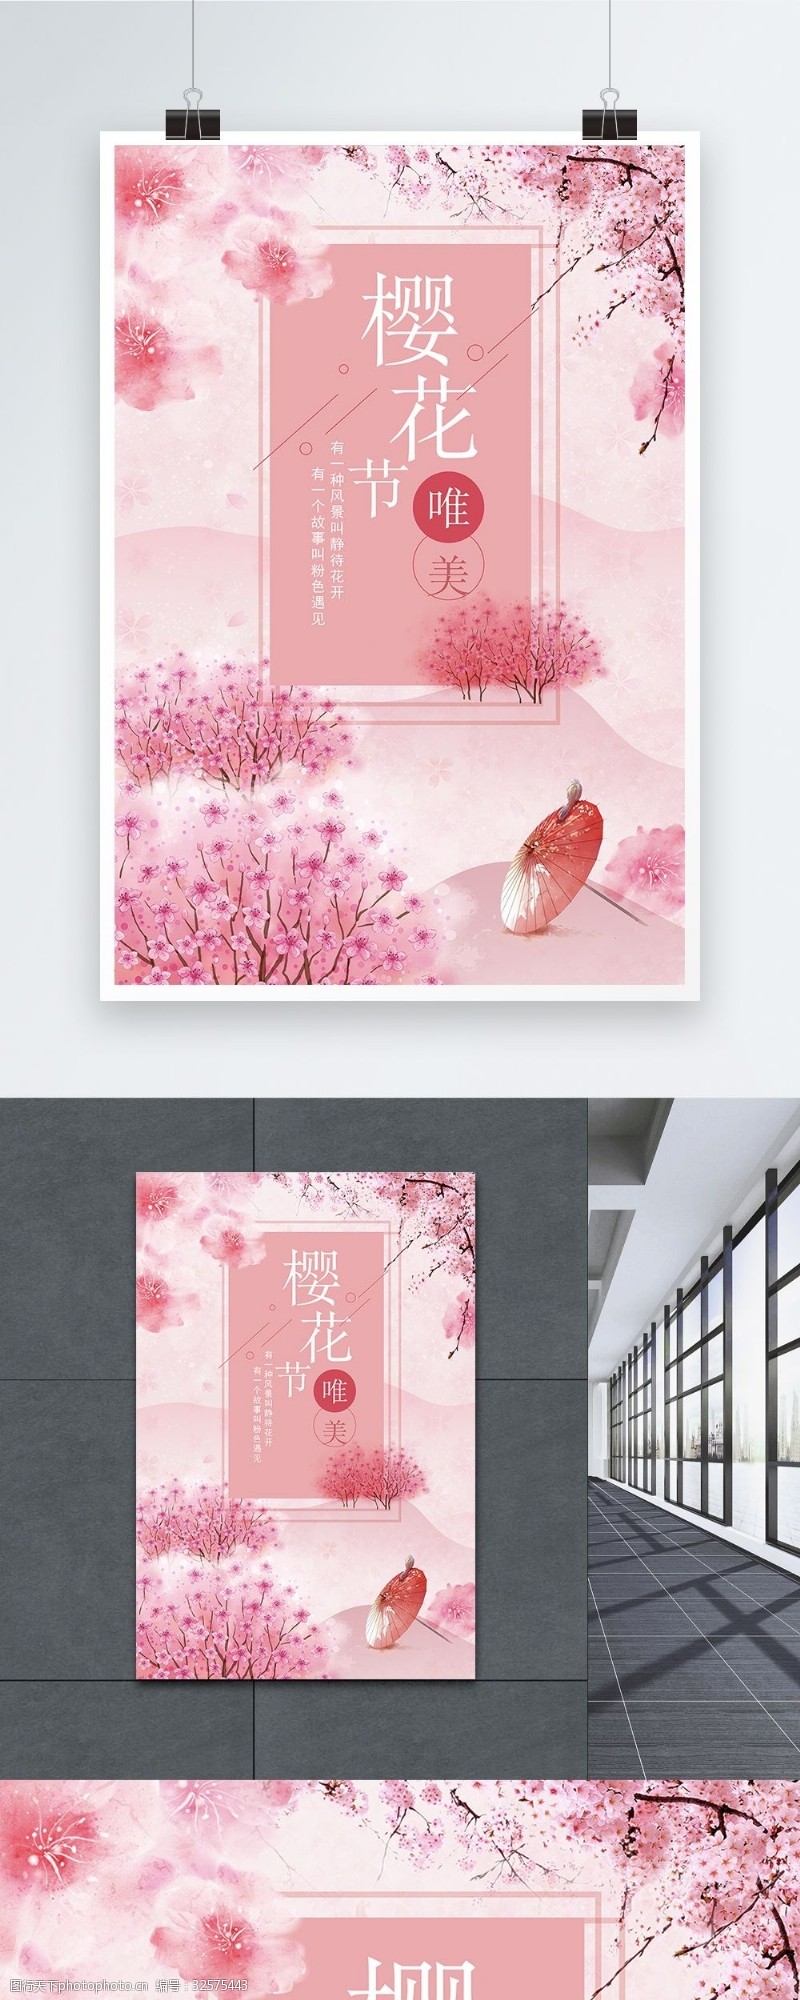 武汉樱花节樱花节旅游海报